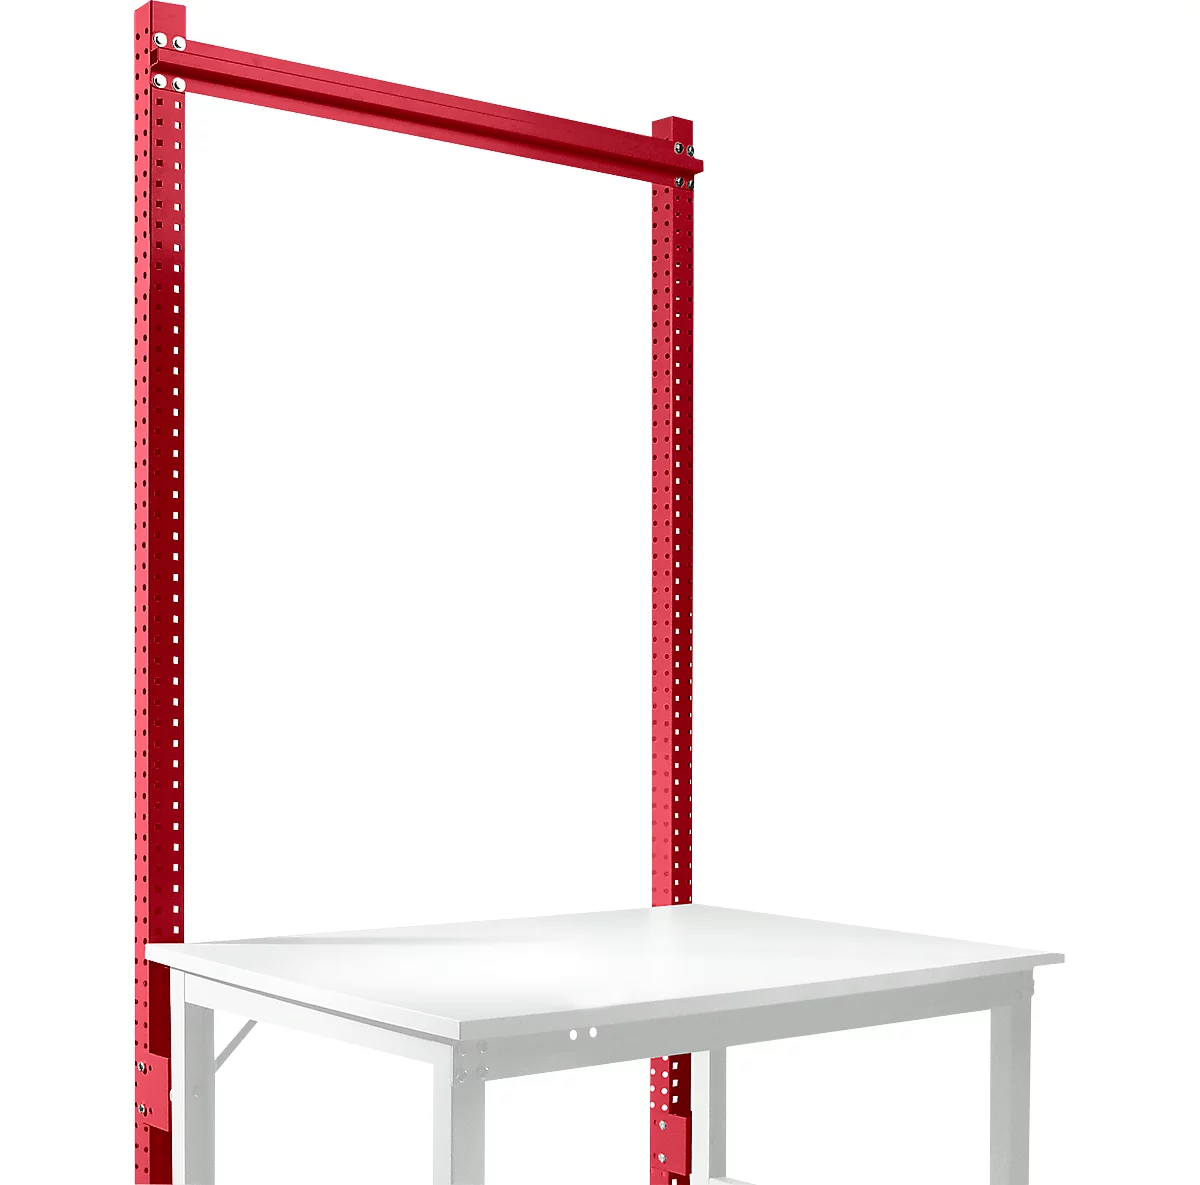 Estructura pórtica adicional, Mesa básica SPEZIAL sistema mesa de trabajo/banco de trabajo UNIVERSAL/PROFI, 1250 mm, rojo rubí